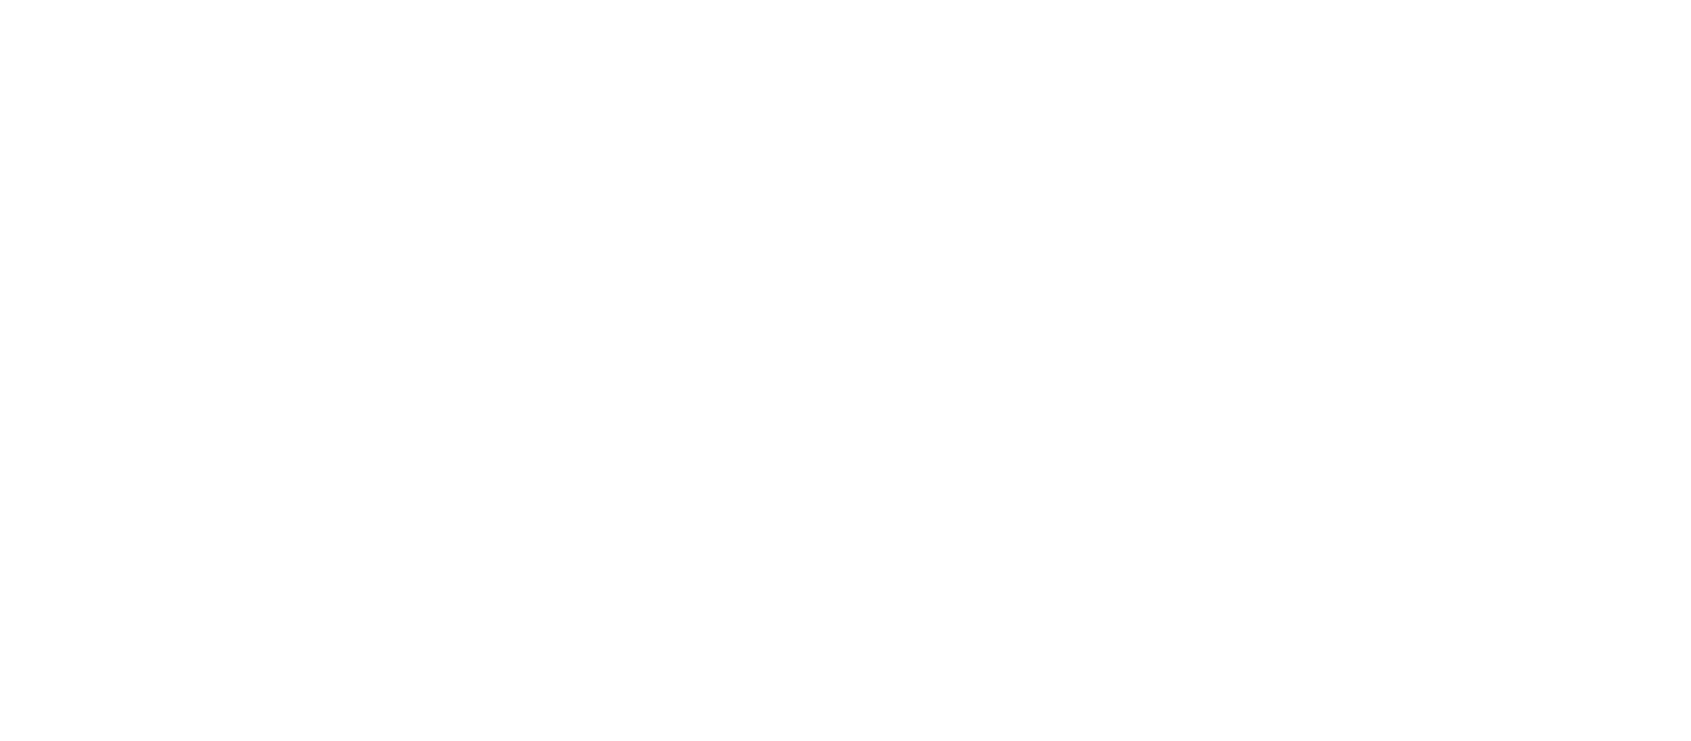 Boze Magazine